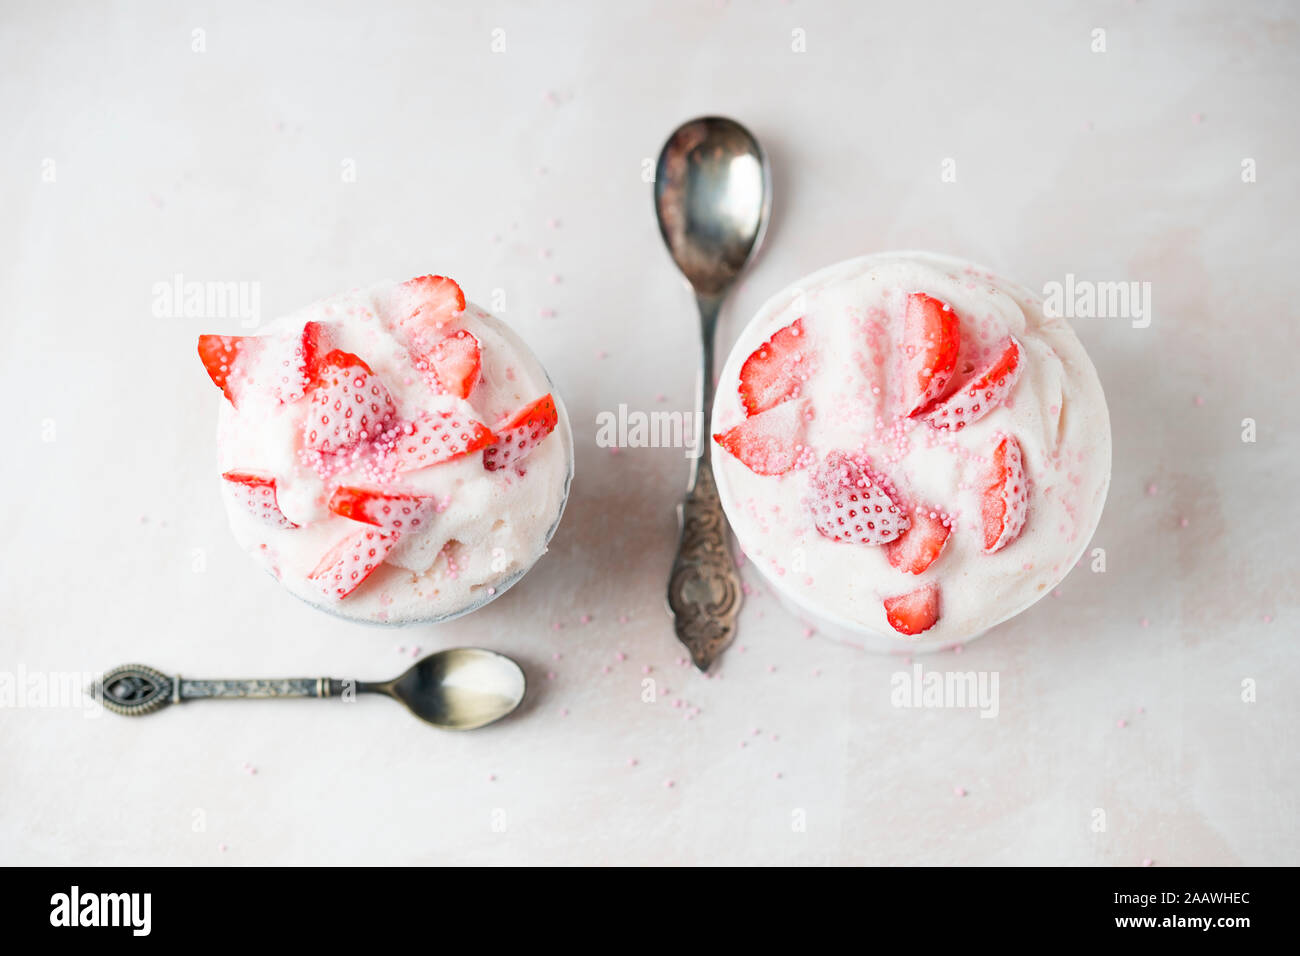 Tourné directement au-dessus des glaces aux fraises servi dans des bols avec cuillère sur la table Banque D'Images